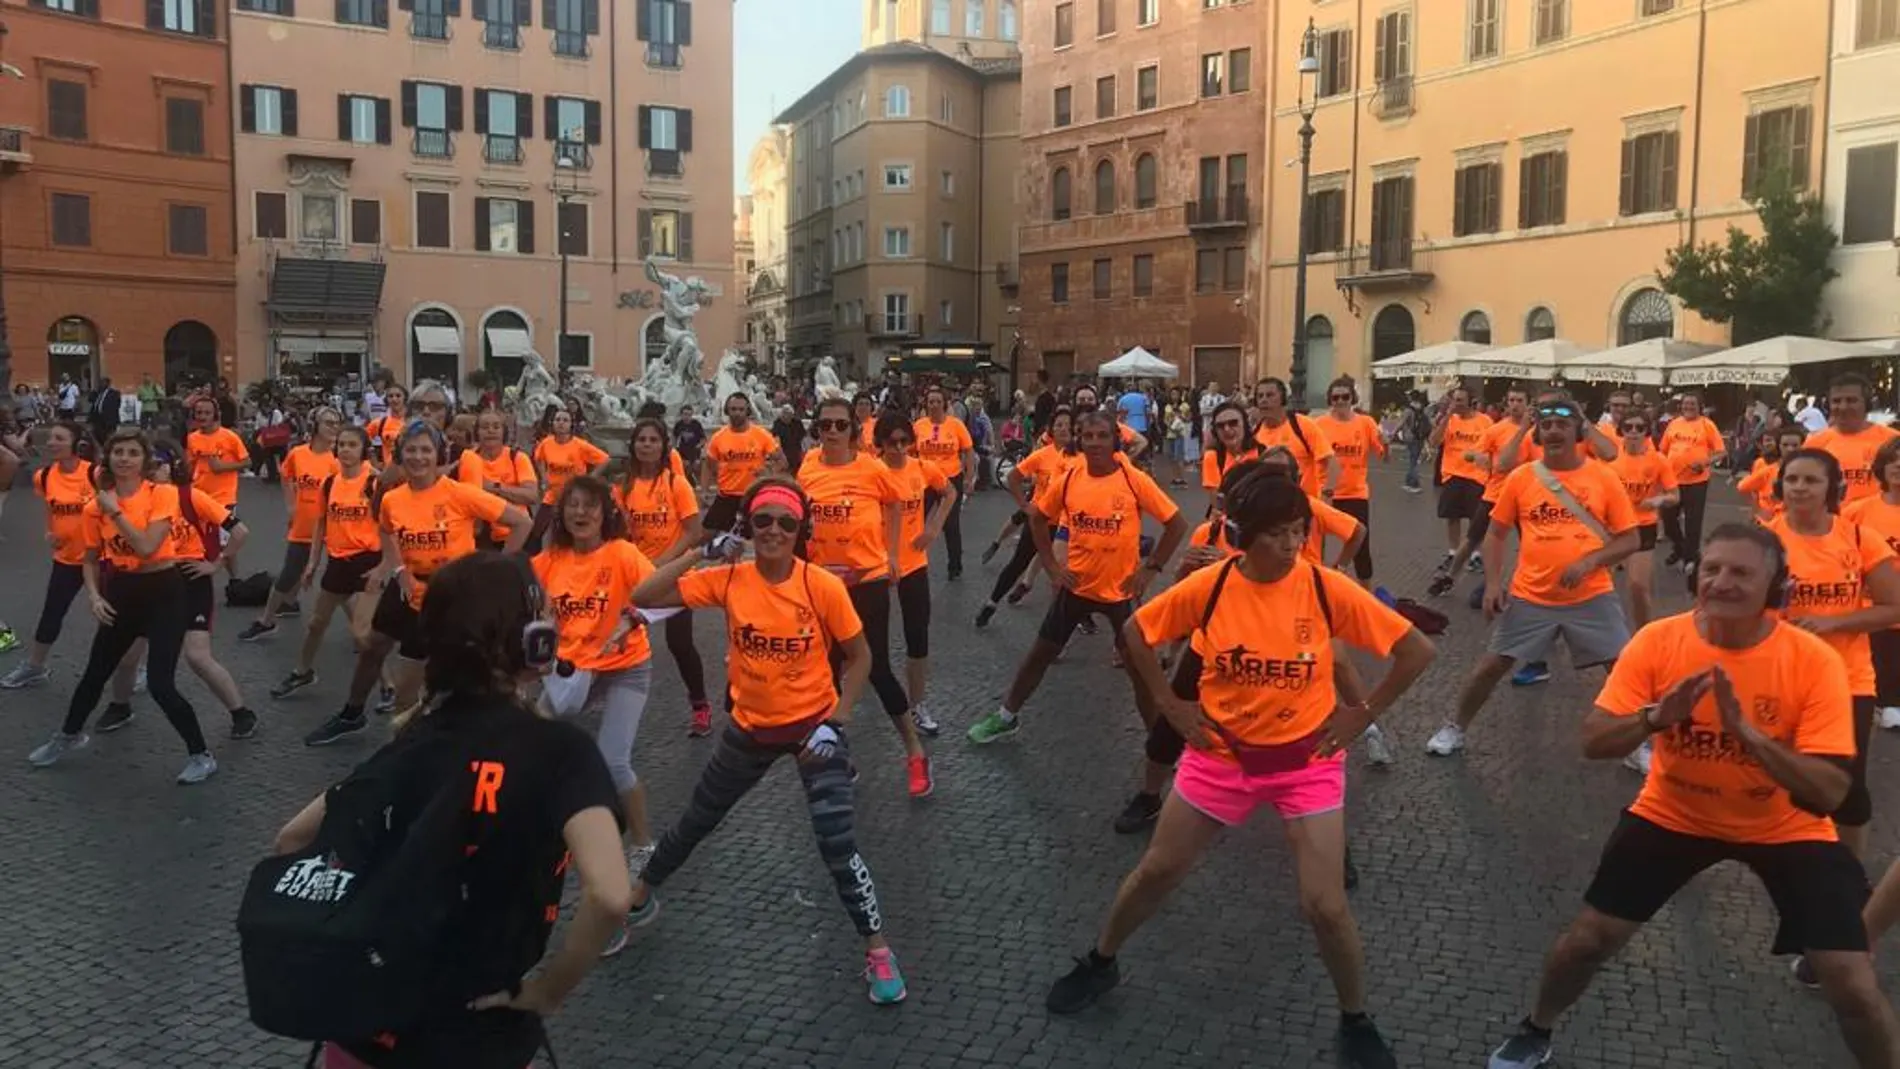 Street workout en la Piazza Navona, Roma